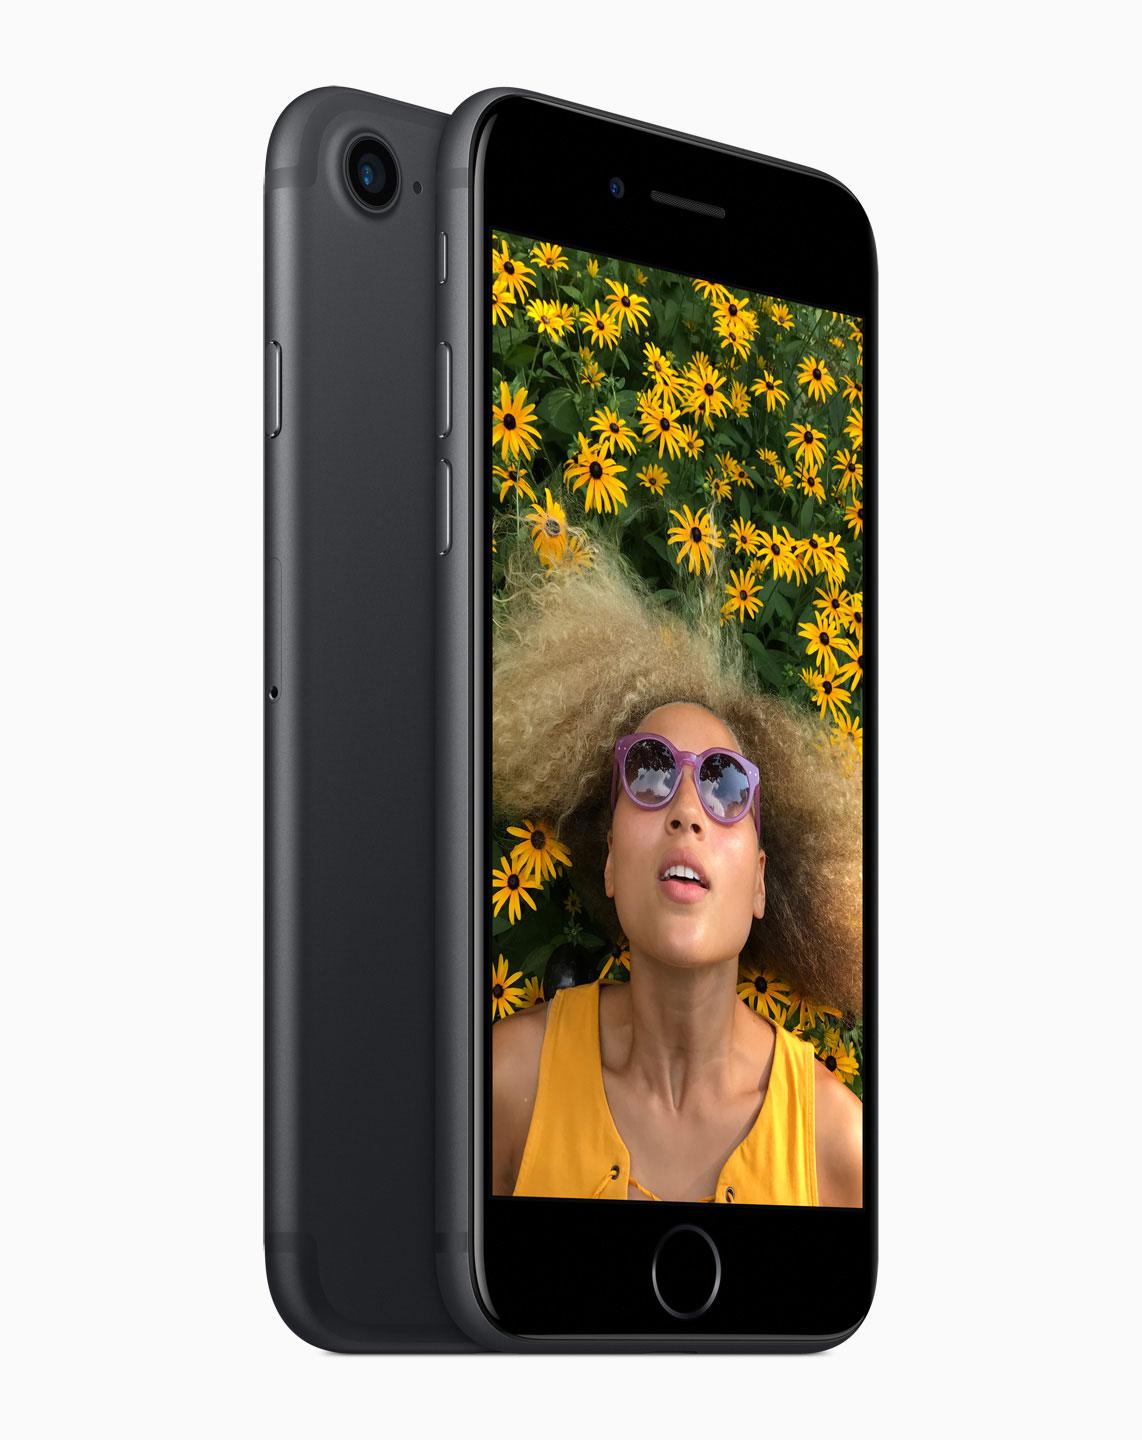 iPhone 7 con chica en la pantalla